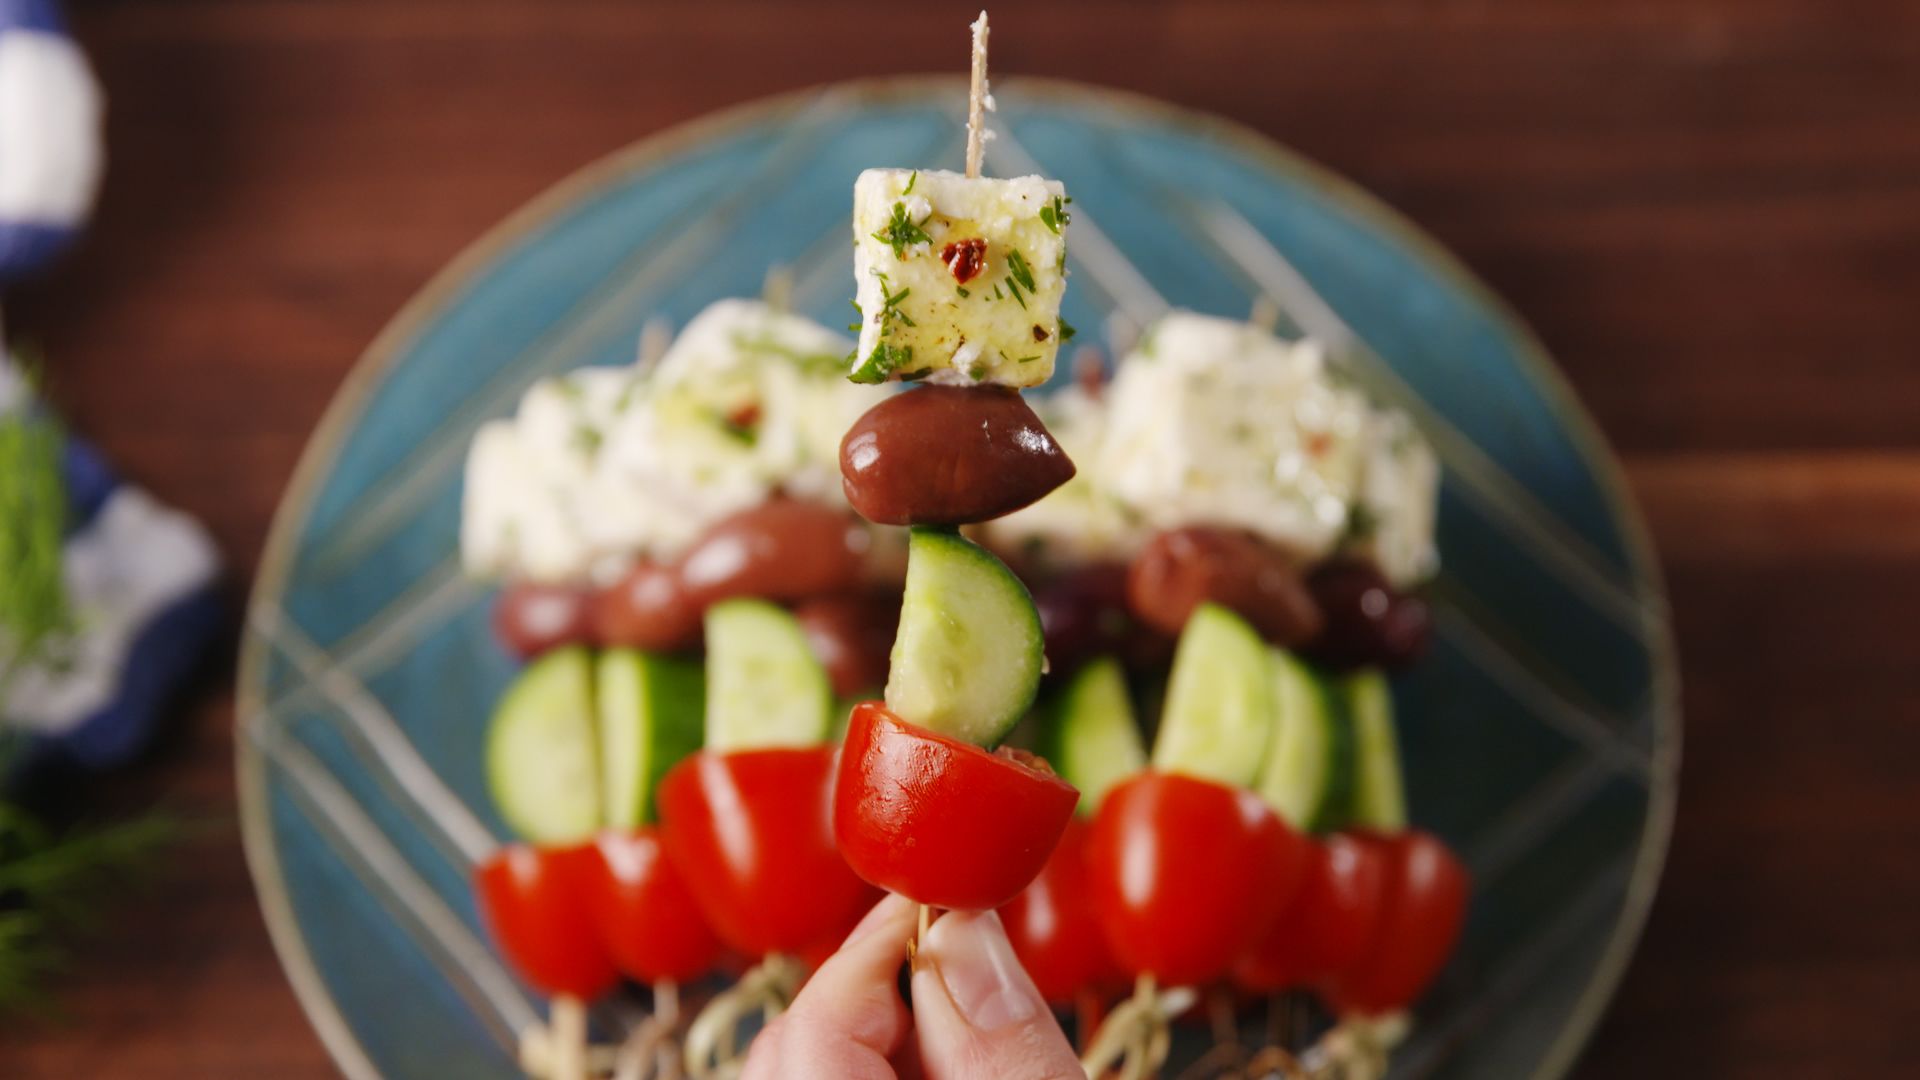 Greek Salad Skewers (Party Skewers)